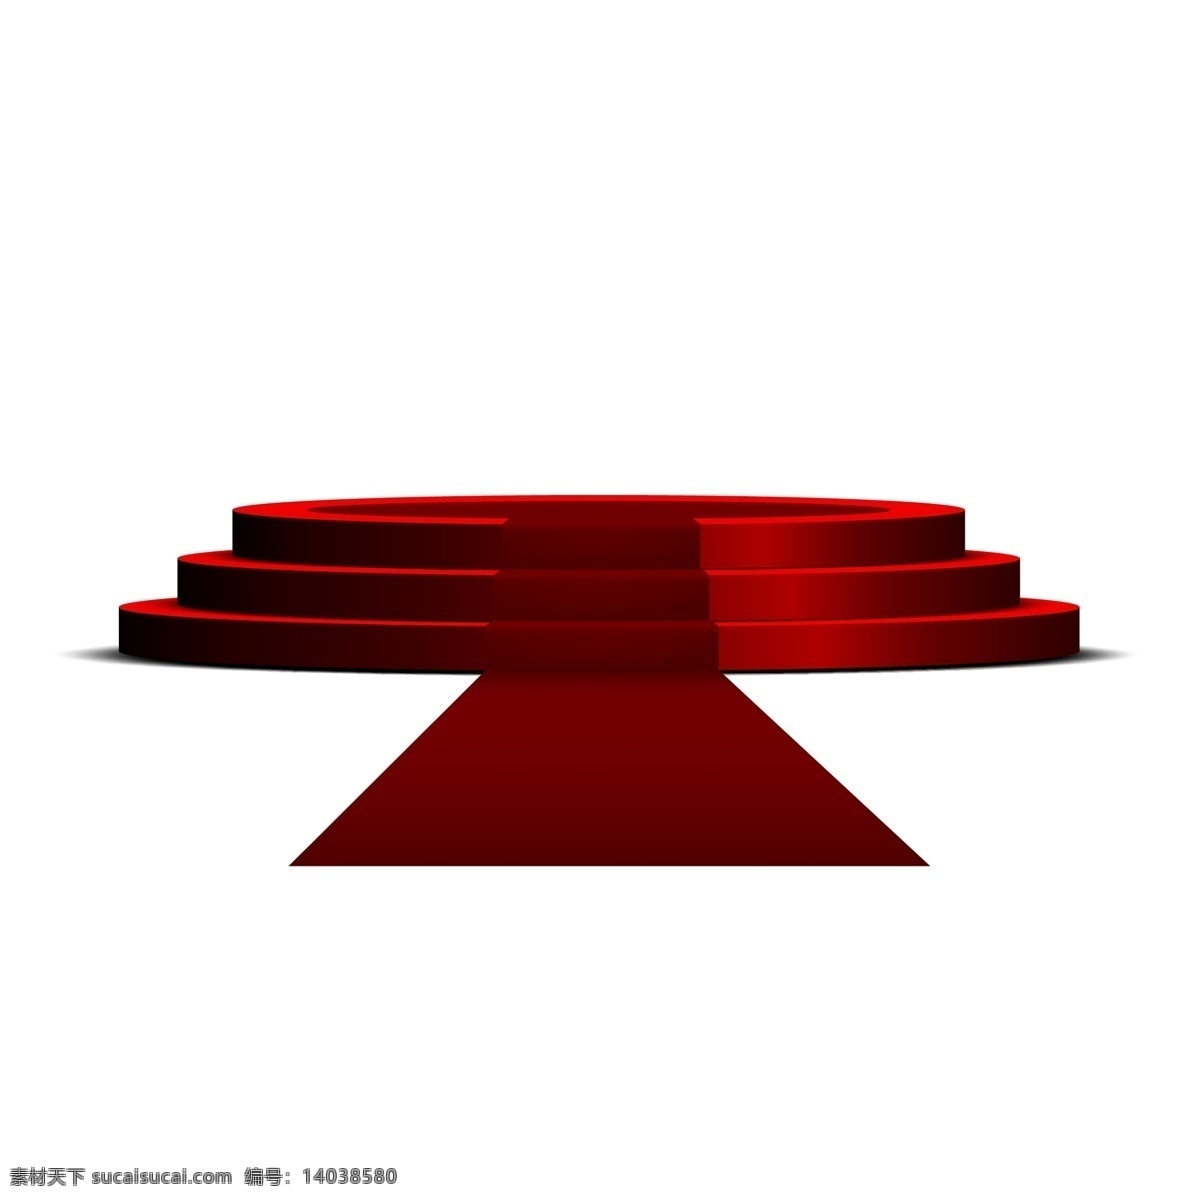 红色 舞台 免 抠 图 地毯 节日布置 活动布置 3d舞台模型 表演舞台 活动氛围 红色的舞台 免抠图